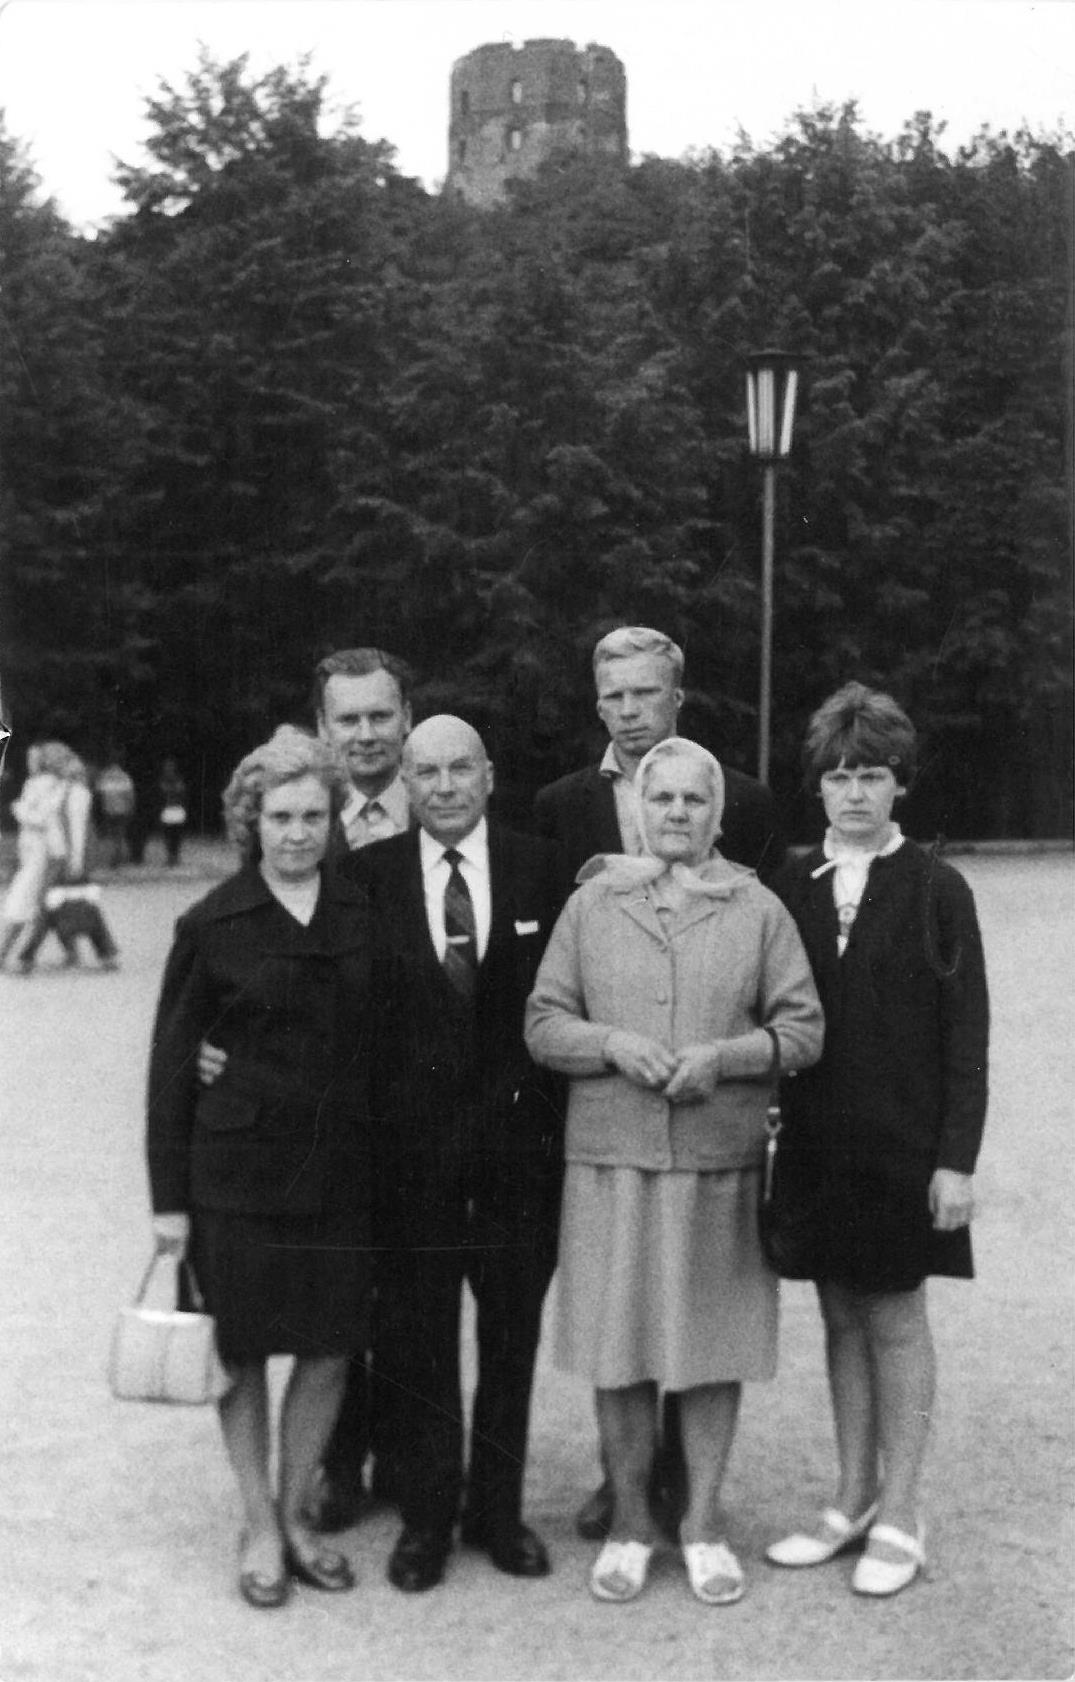 Pirmasis Kazio Balčiūno vizitas Lietuvoje, praleidus ilgus tremties metus Jungtinėse Amerikos Valstijose. K. Balčiūnas (pirmoje eilėje antras iš kairės) su artimaisiais. Vilnius, 1972 m. rugpjūčio 26 d. 